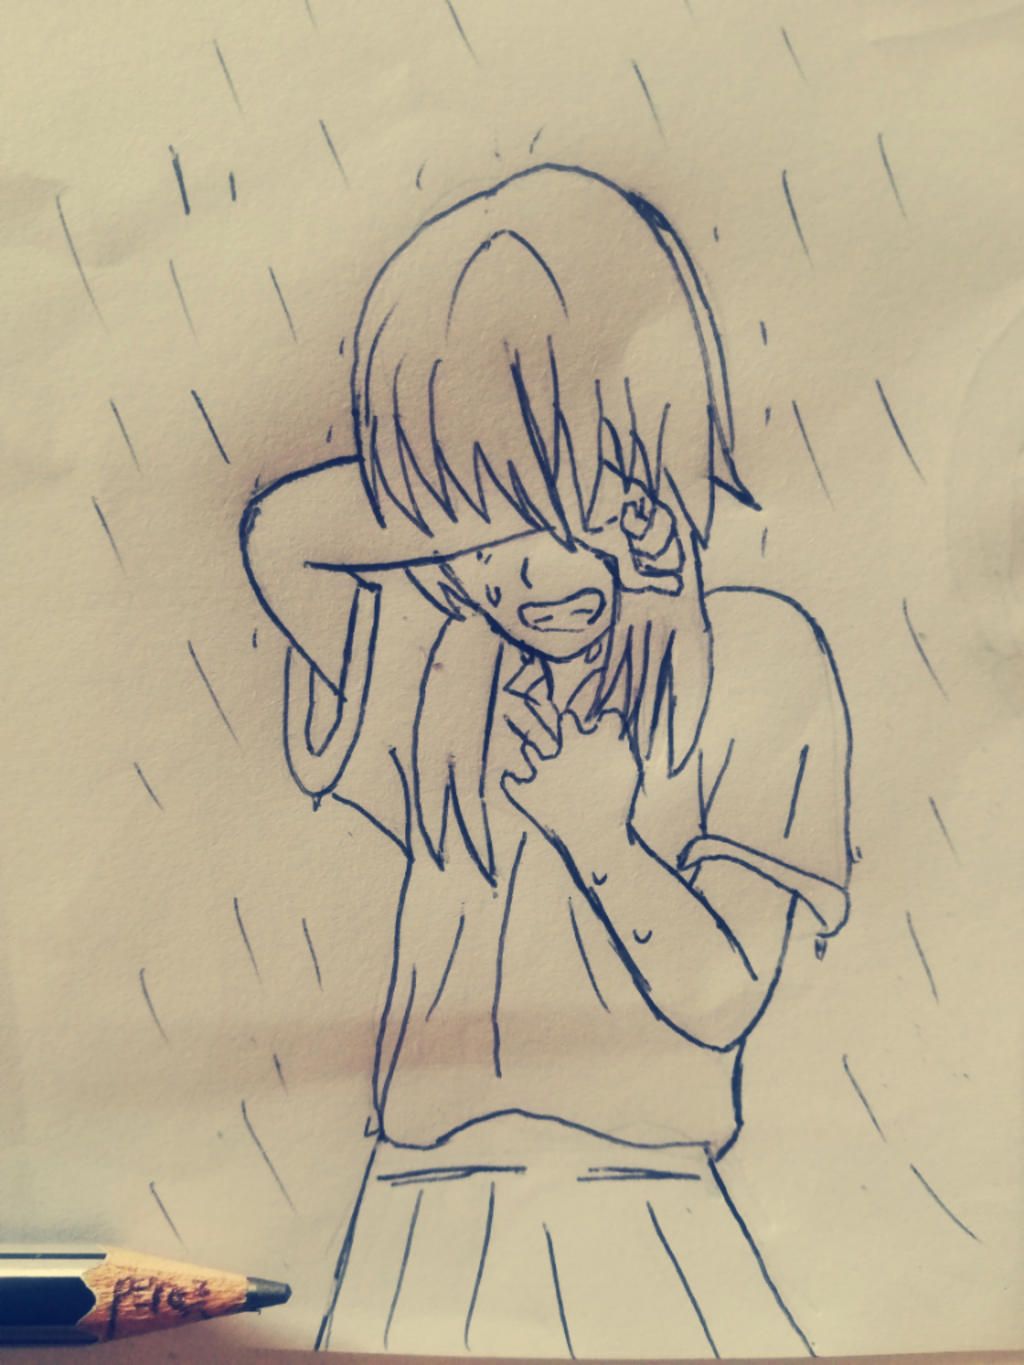 Vậy là mọi người đang tiếp tục đồng hành với tác giả để vẽ cô gái đang khóc dưới mưa. Bức tranh này có thể là mang những thông điệp cảm động và dễ hiểu. Hãy cùng xem và cảm nhận những cảm xúc trong bức tranh này.